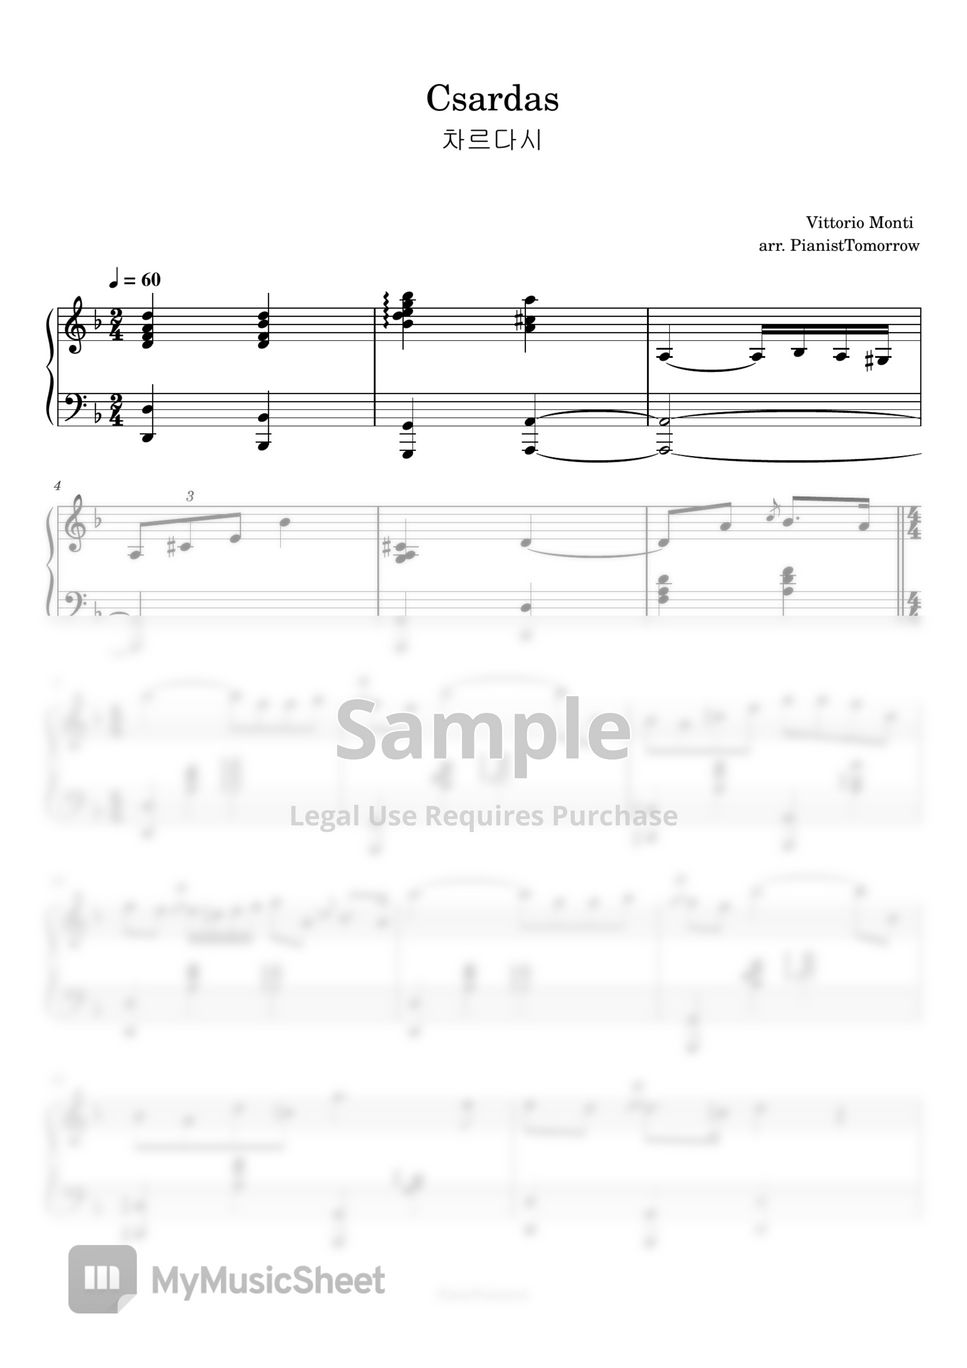 V. Monti - Csárdás (Piano version) by PianistTomorrow